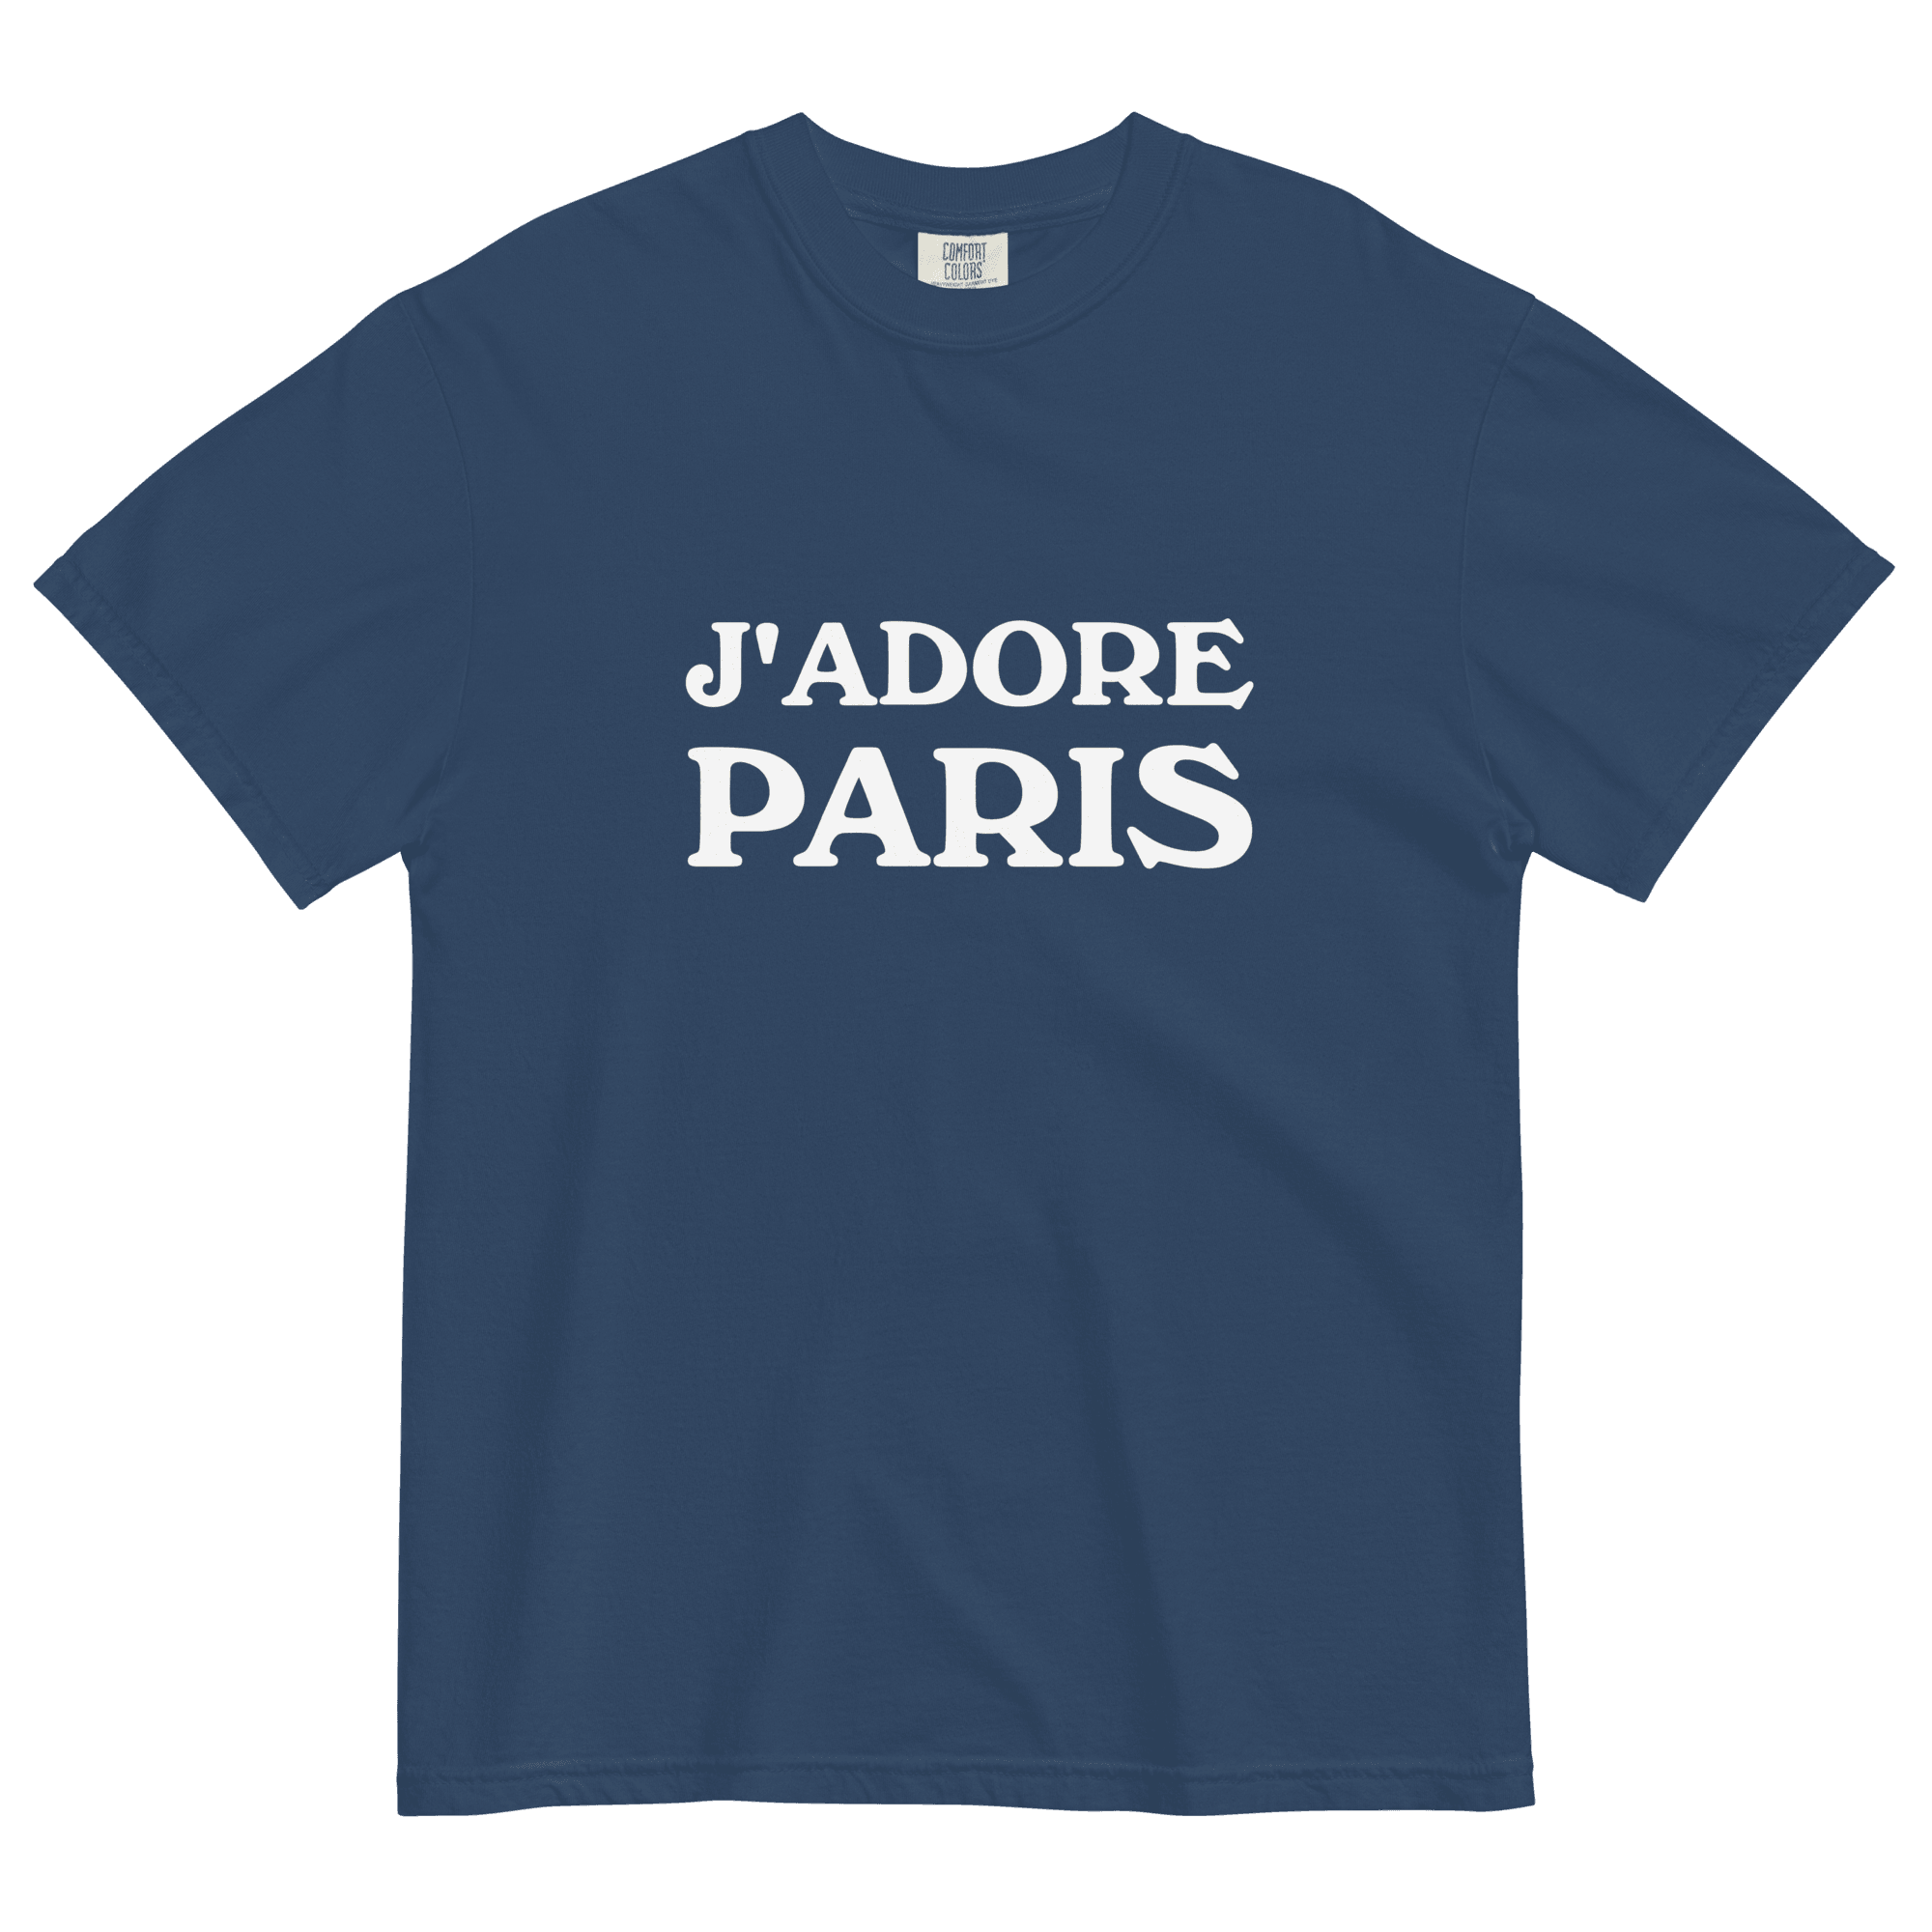 J'ADORE PARIS Shirt - Polychrome Goods 🍊